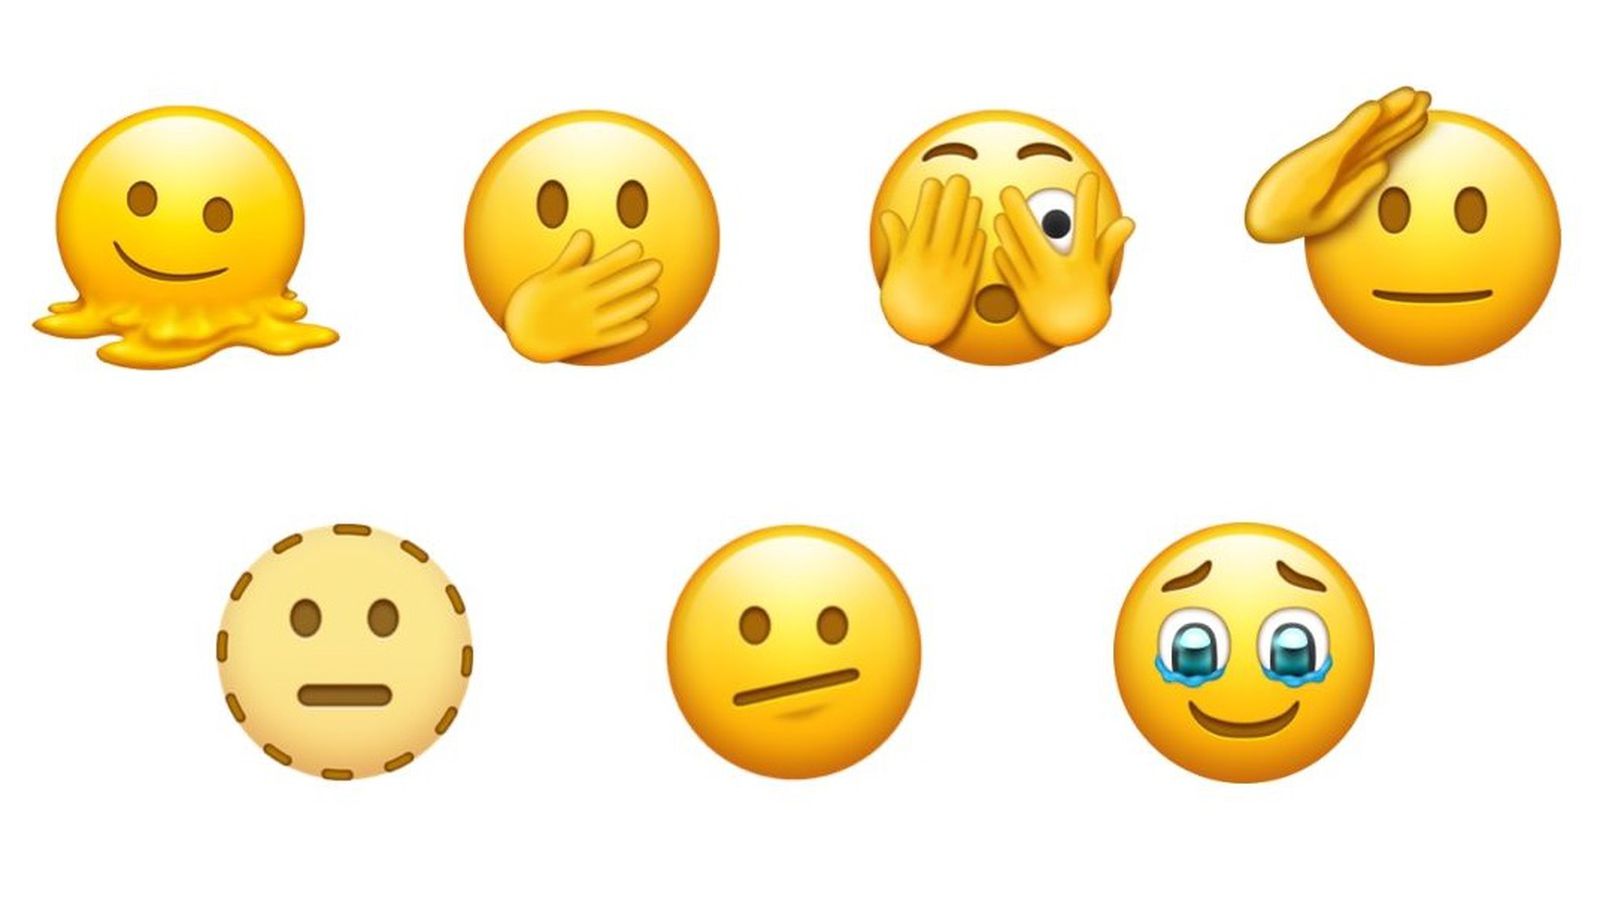 Emoji: Thể hiện cảm xúc của bạn trên toàn bộ các nền tảng mạng xã hội với bộ sưu tập Emoji đa dạng và đầy màu sắc. Cho dù bạn đang vui, buồn, hay phức tạp thì đều có một Emoji phù hợp để thể hiện tâm trạng của bạn.